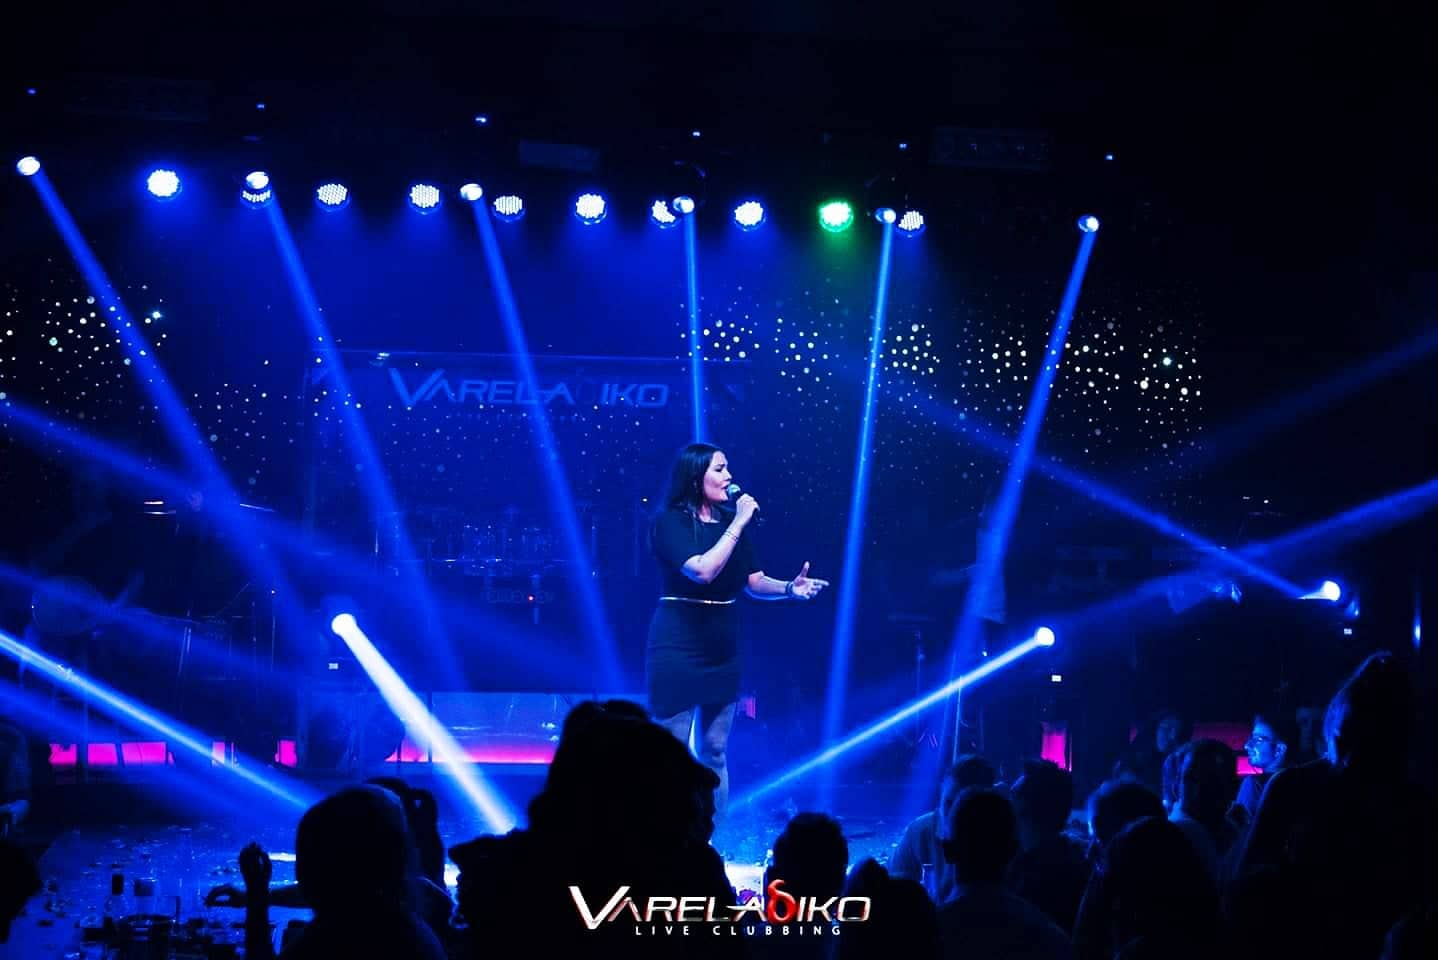 Μάγεψε στην πρεμιέρα της στο VARELAδIKO LIVE Clubbing η Εύα Ρήγα